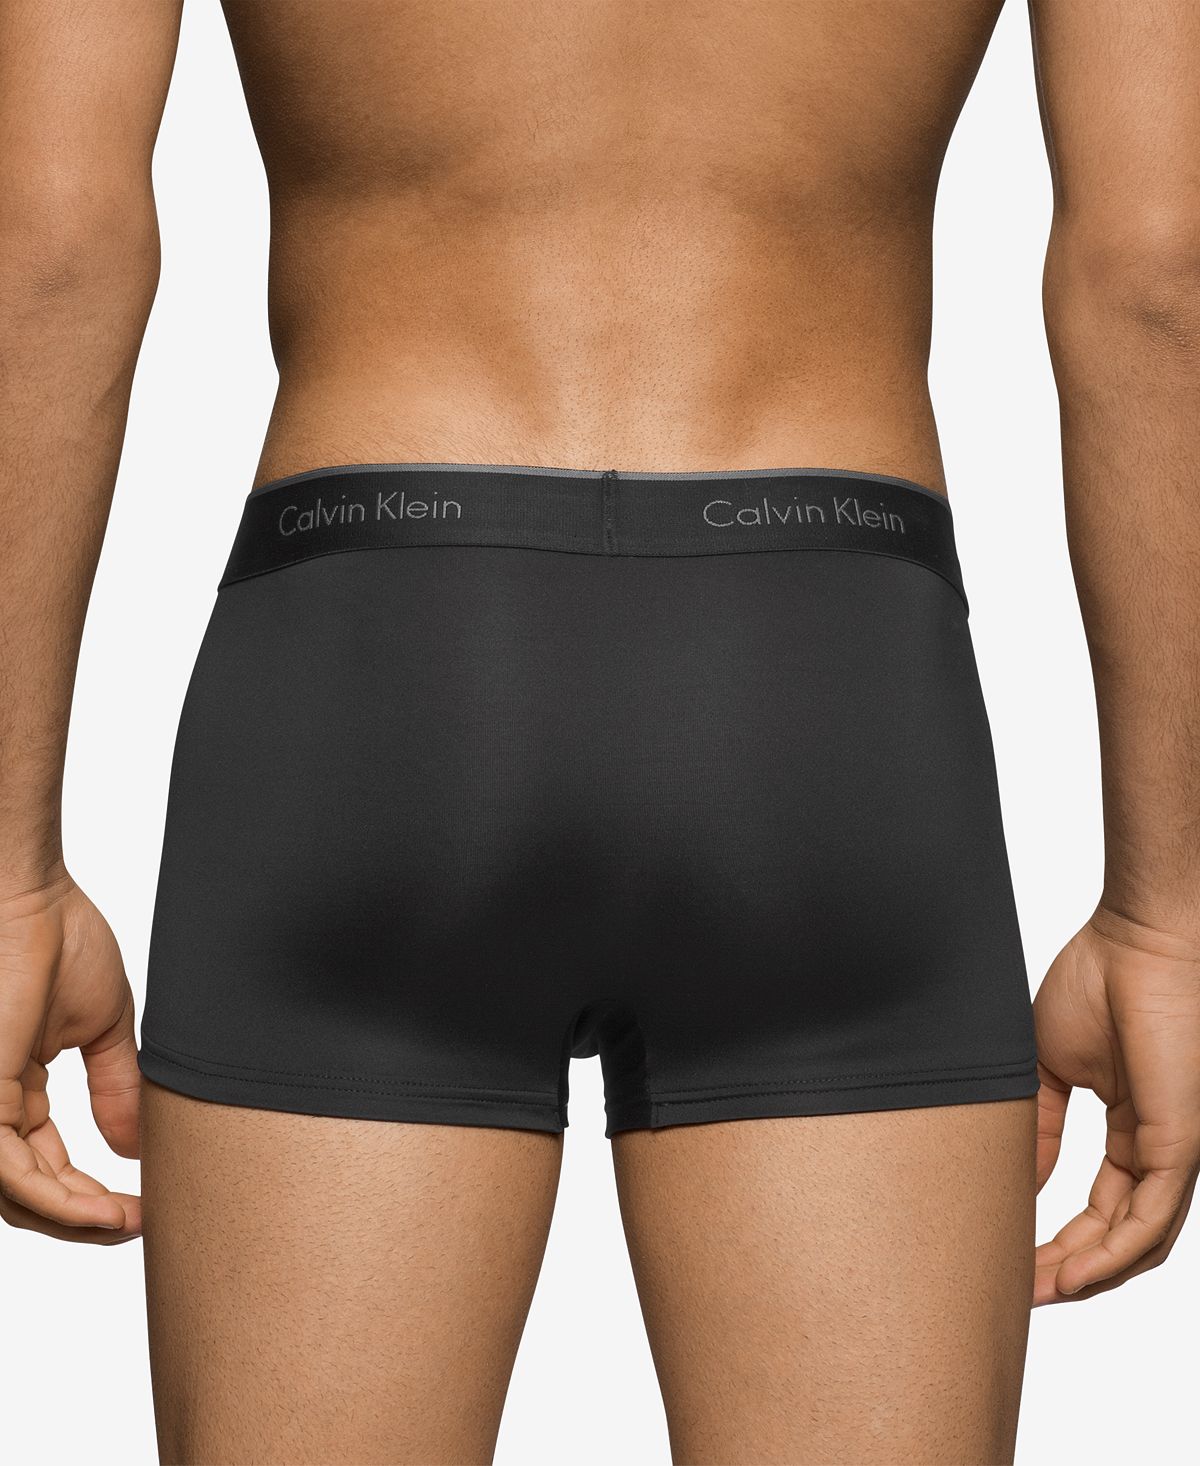 Calvin Klein Microfiber Stretch Trunk 3-pack Black